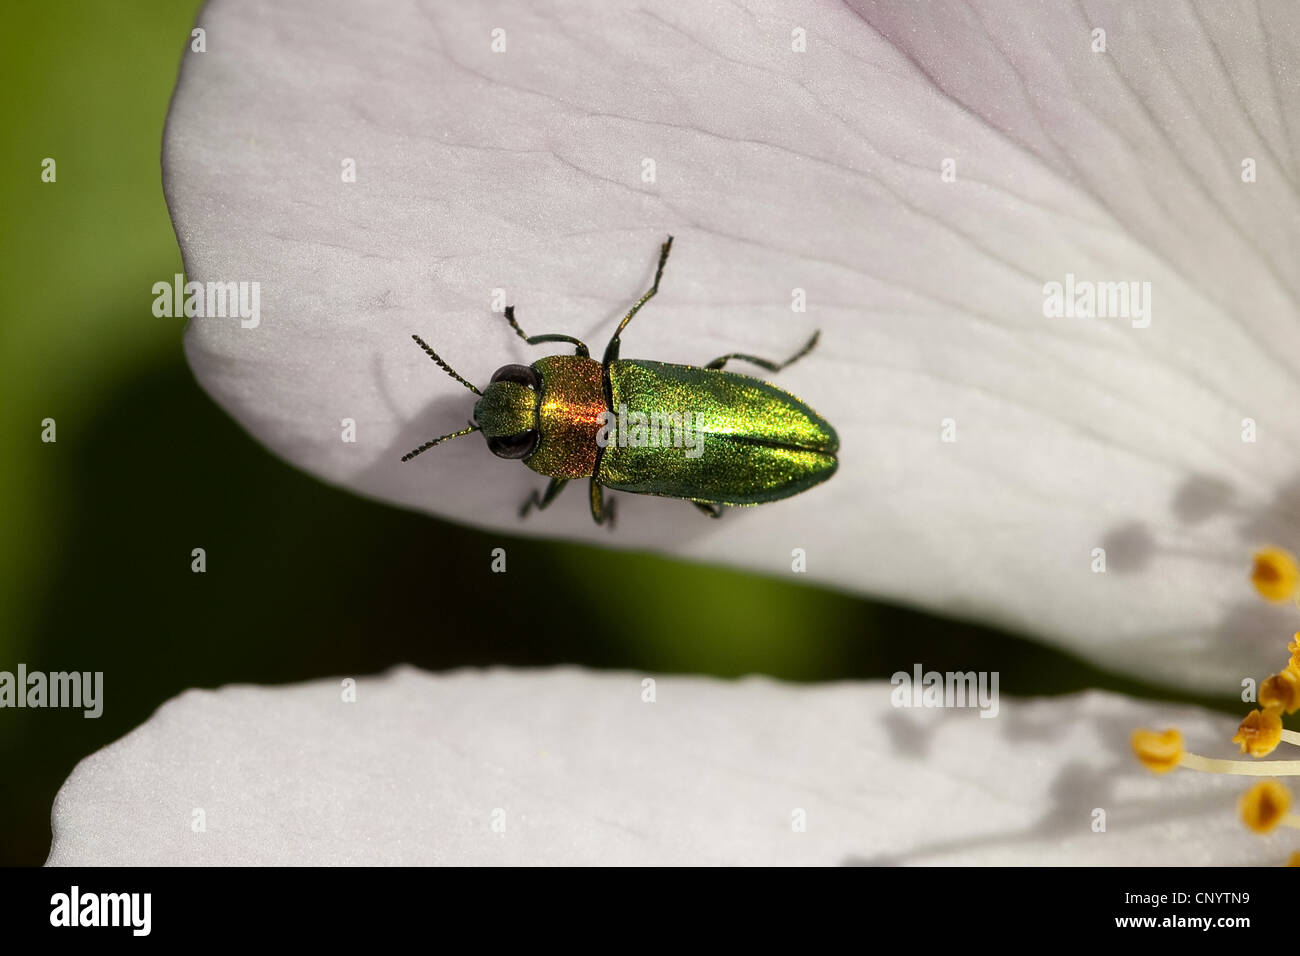 Jewel beetle, Metallic wood-boring beetle (Anthaxia nitidula), sitting on a flower, Germany Stock Photo